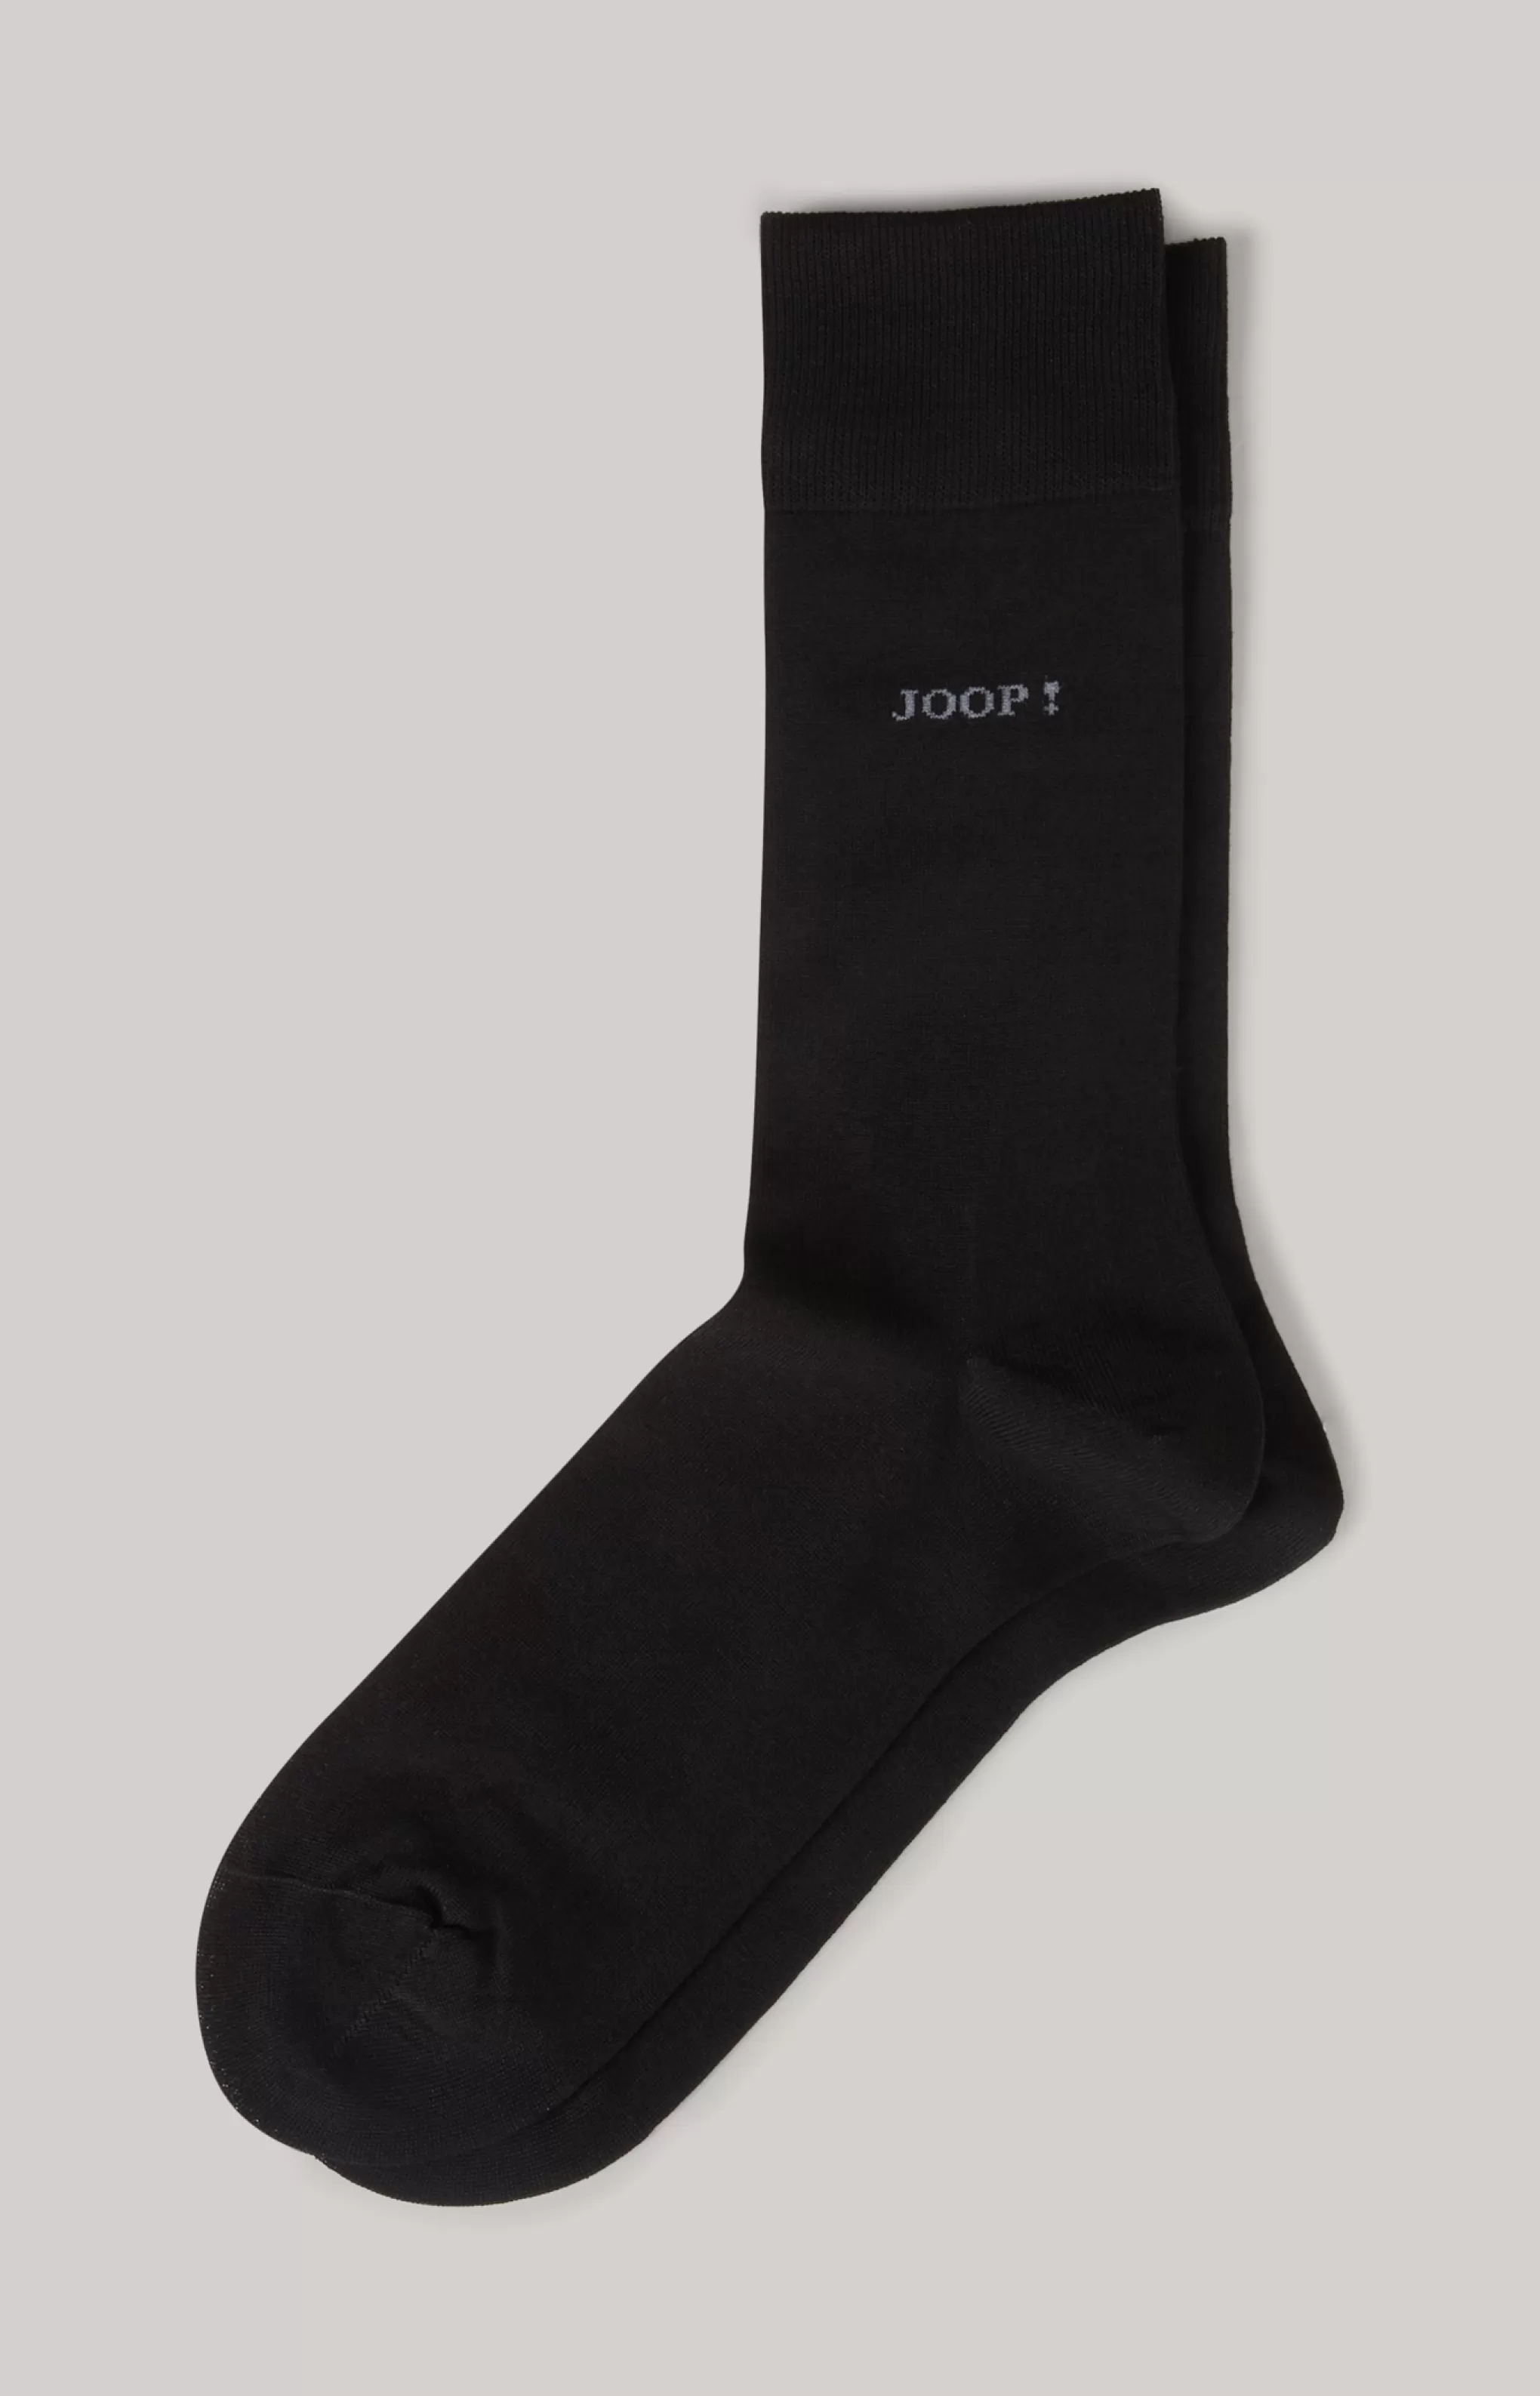 Socks*JOOP Socks Business Socks in